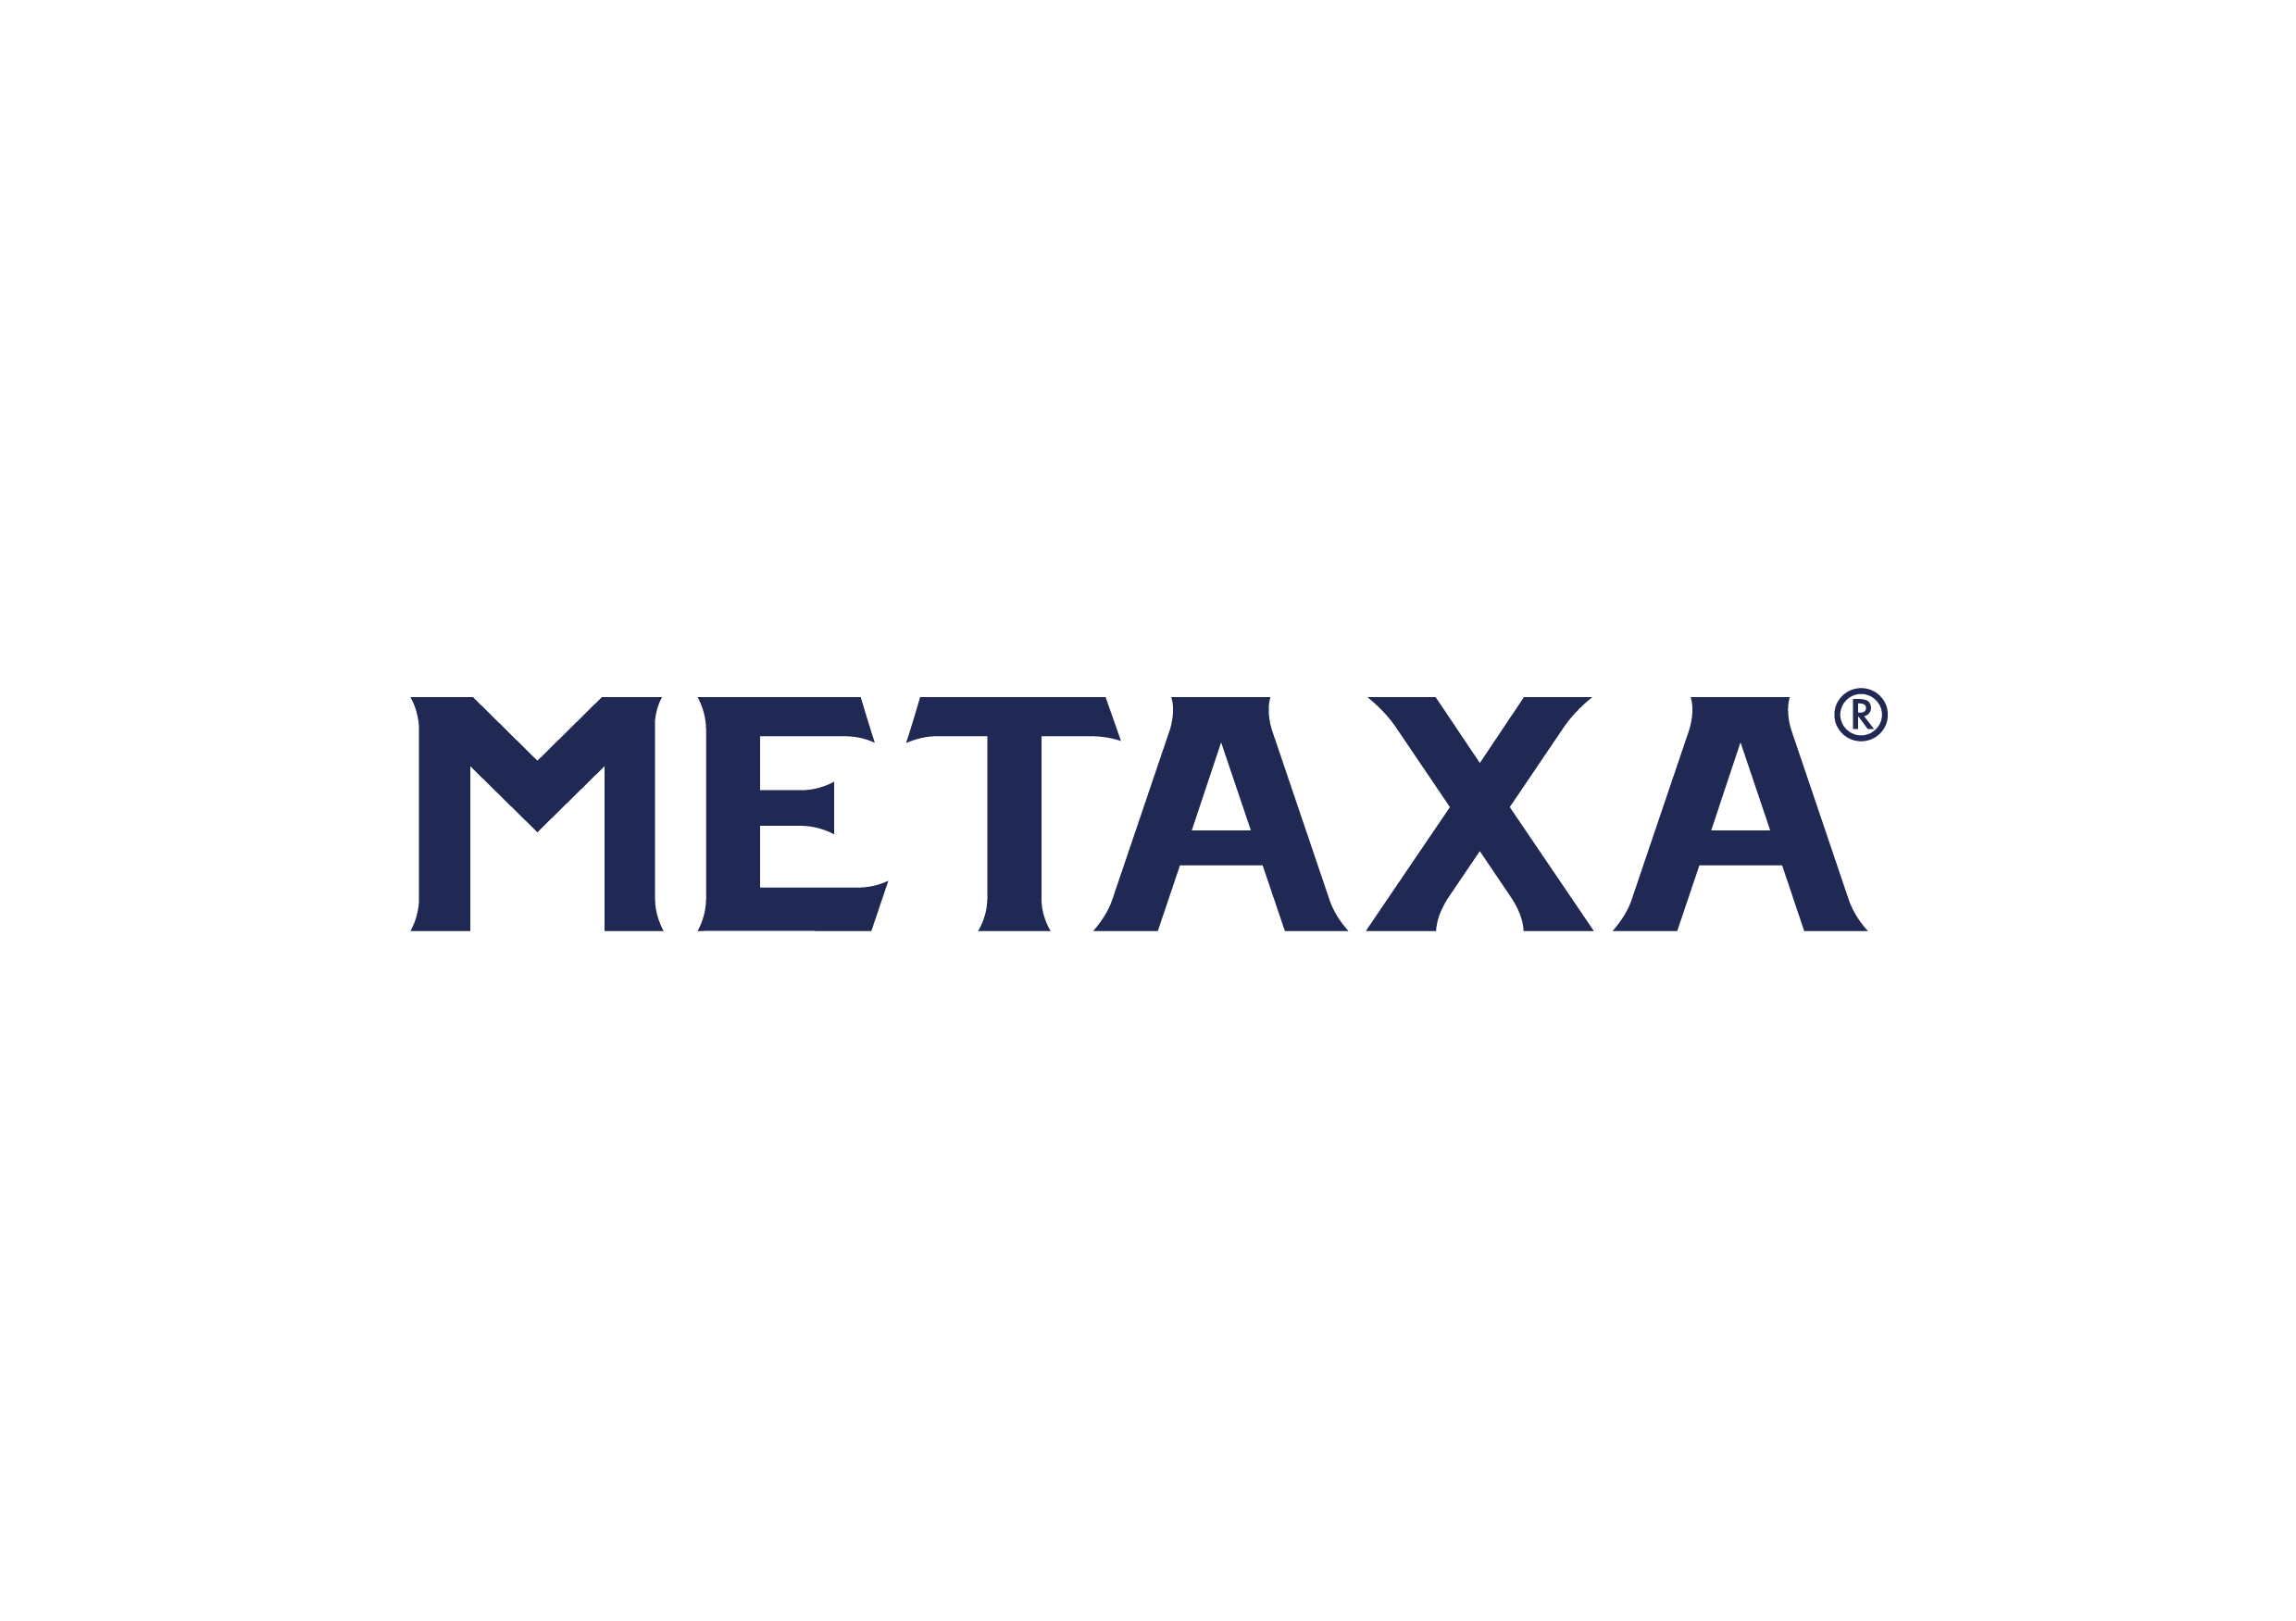 metaxa